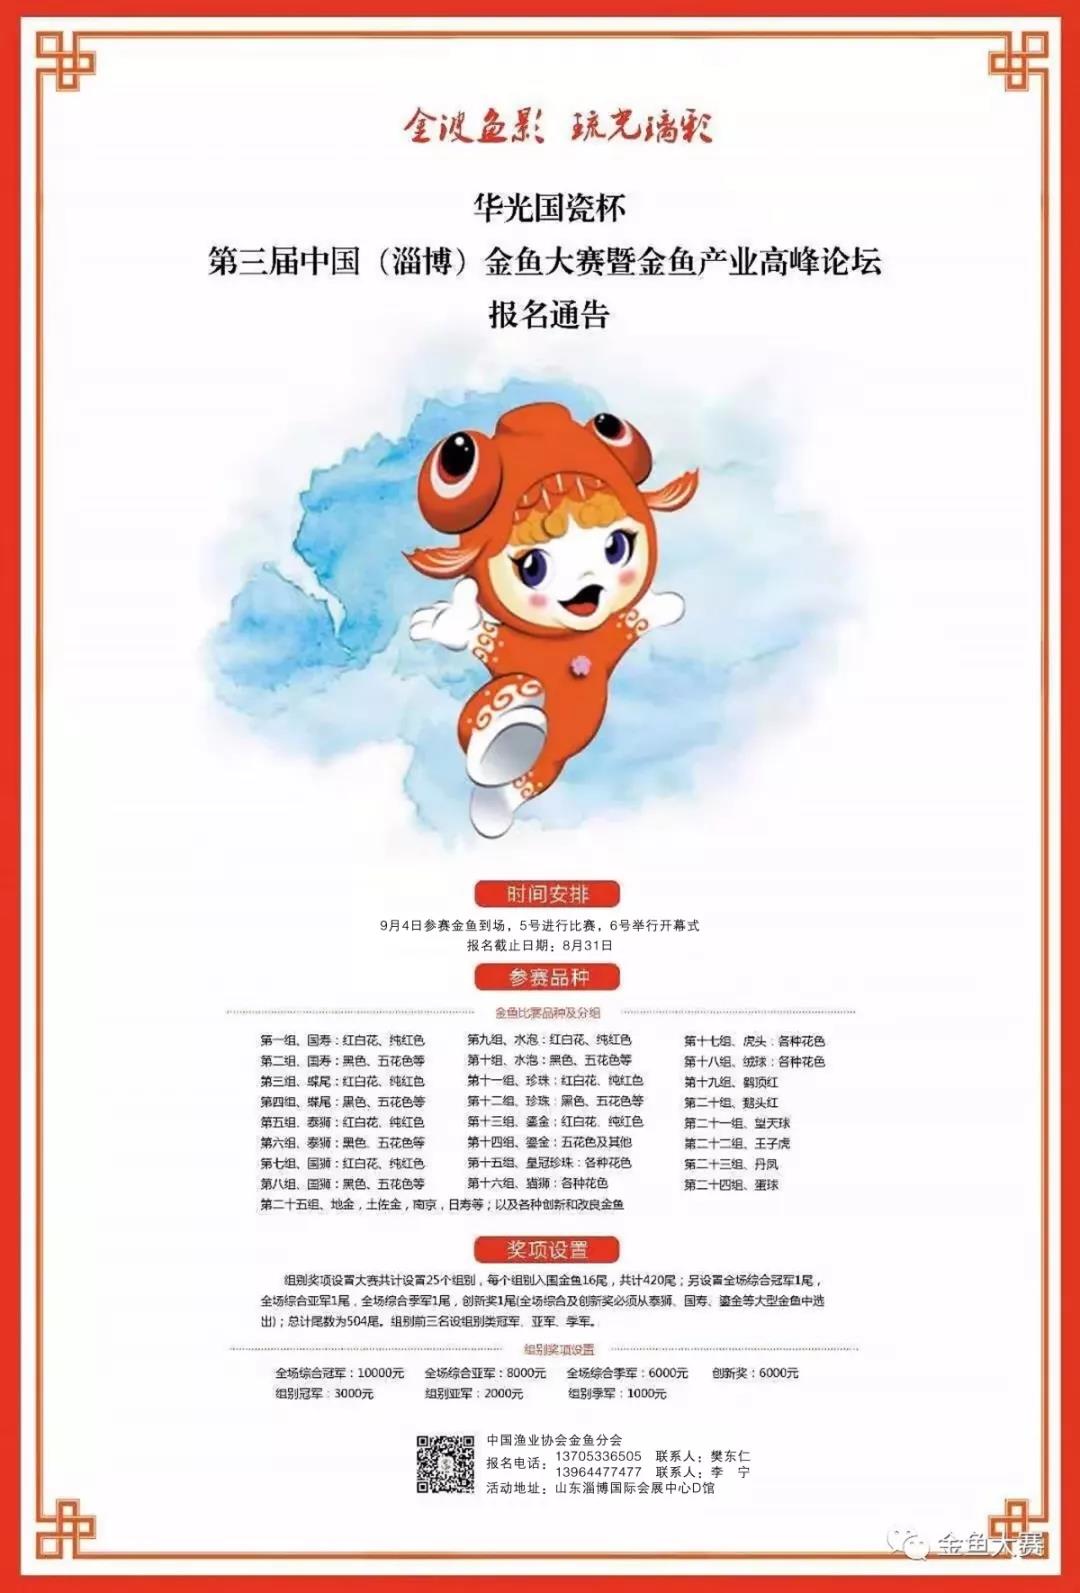 一场“鱼”众不同的盛典——第三届中国金鱼大赛即将举办